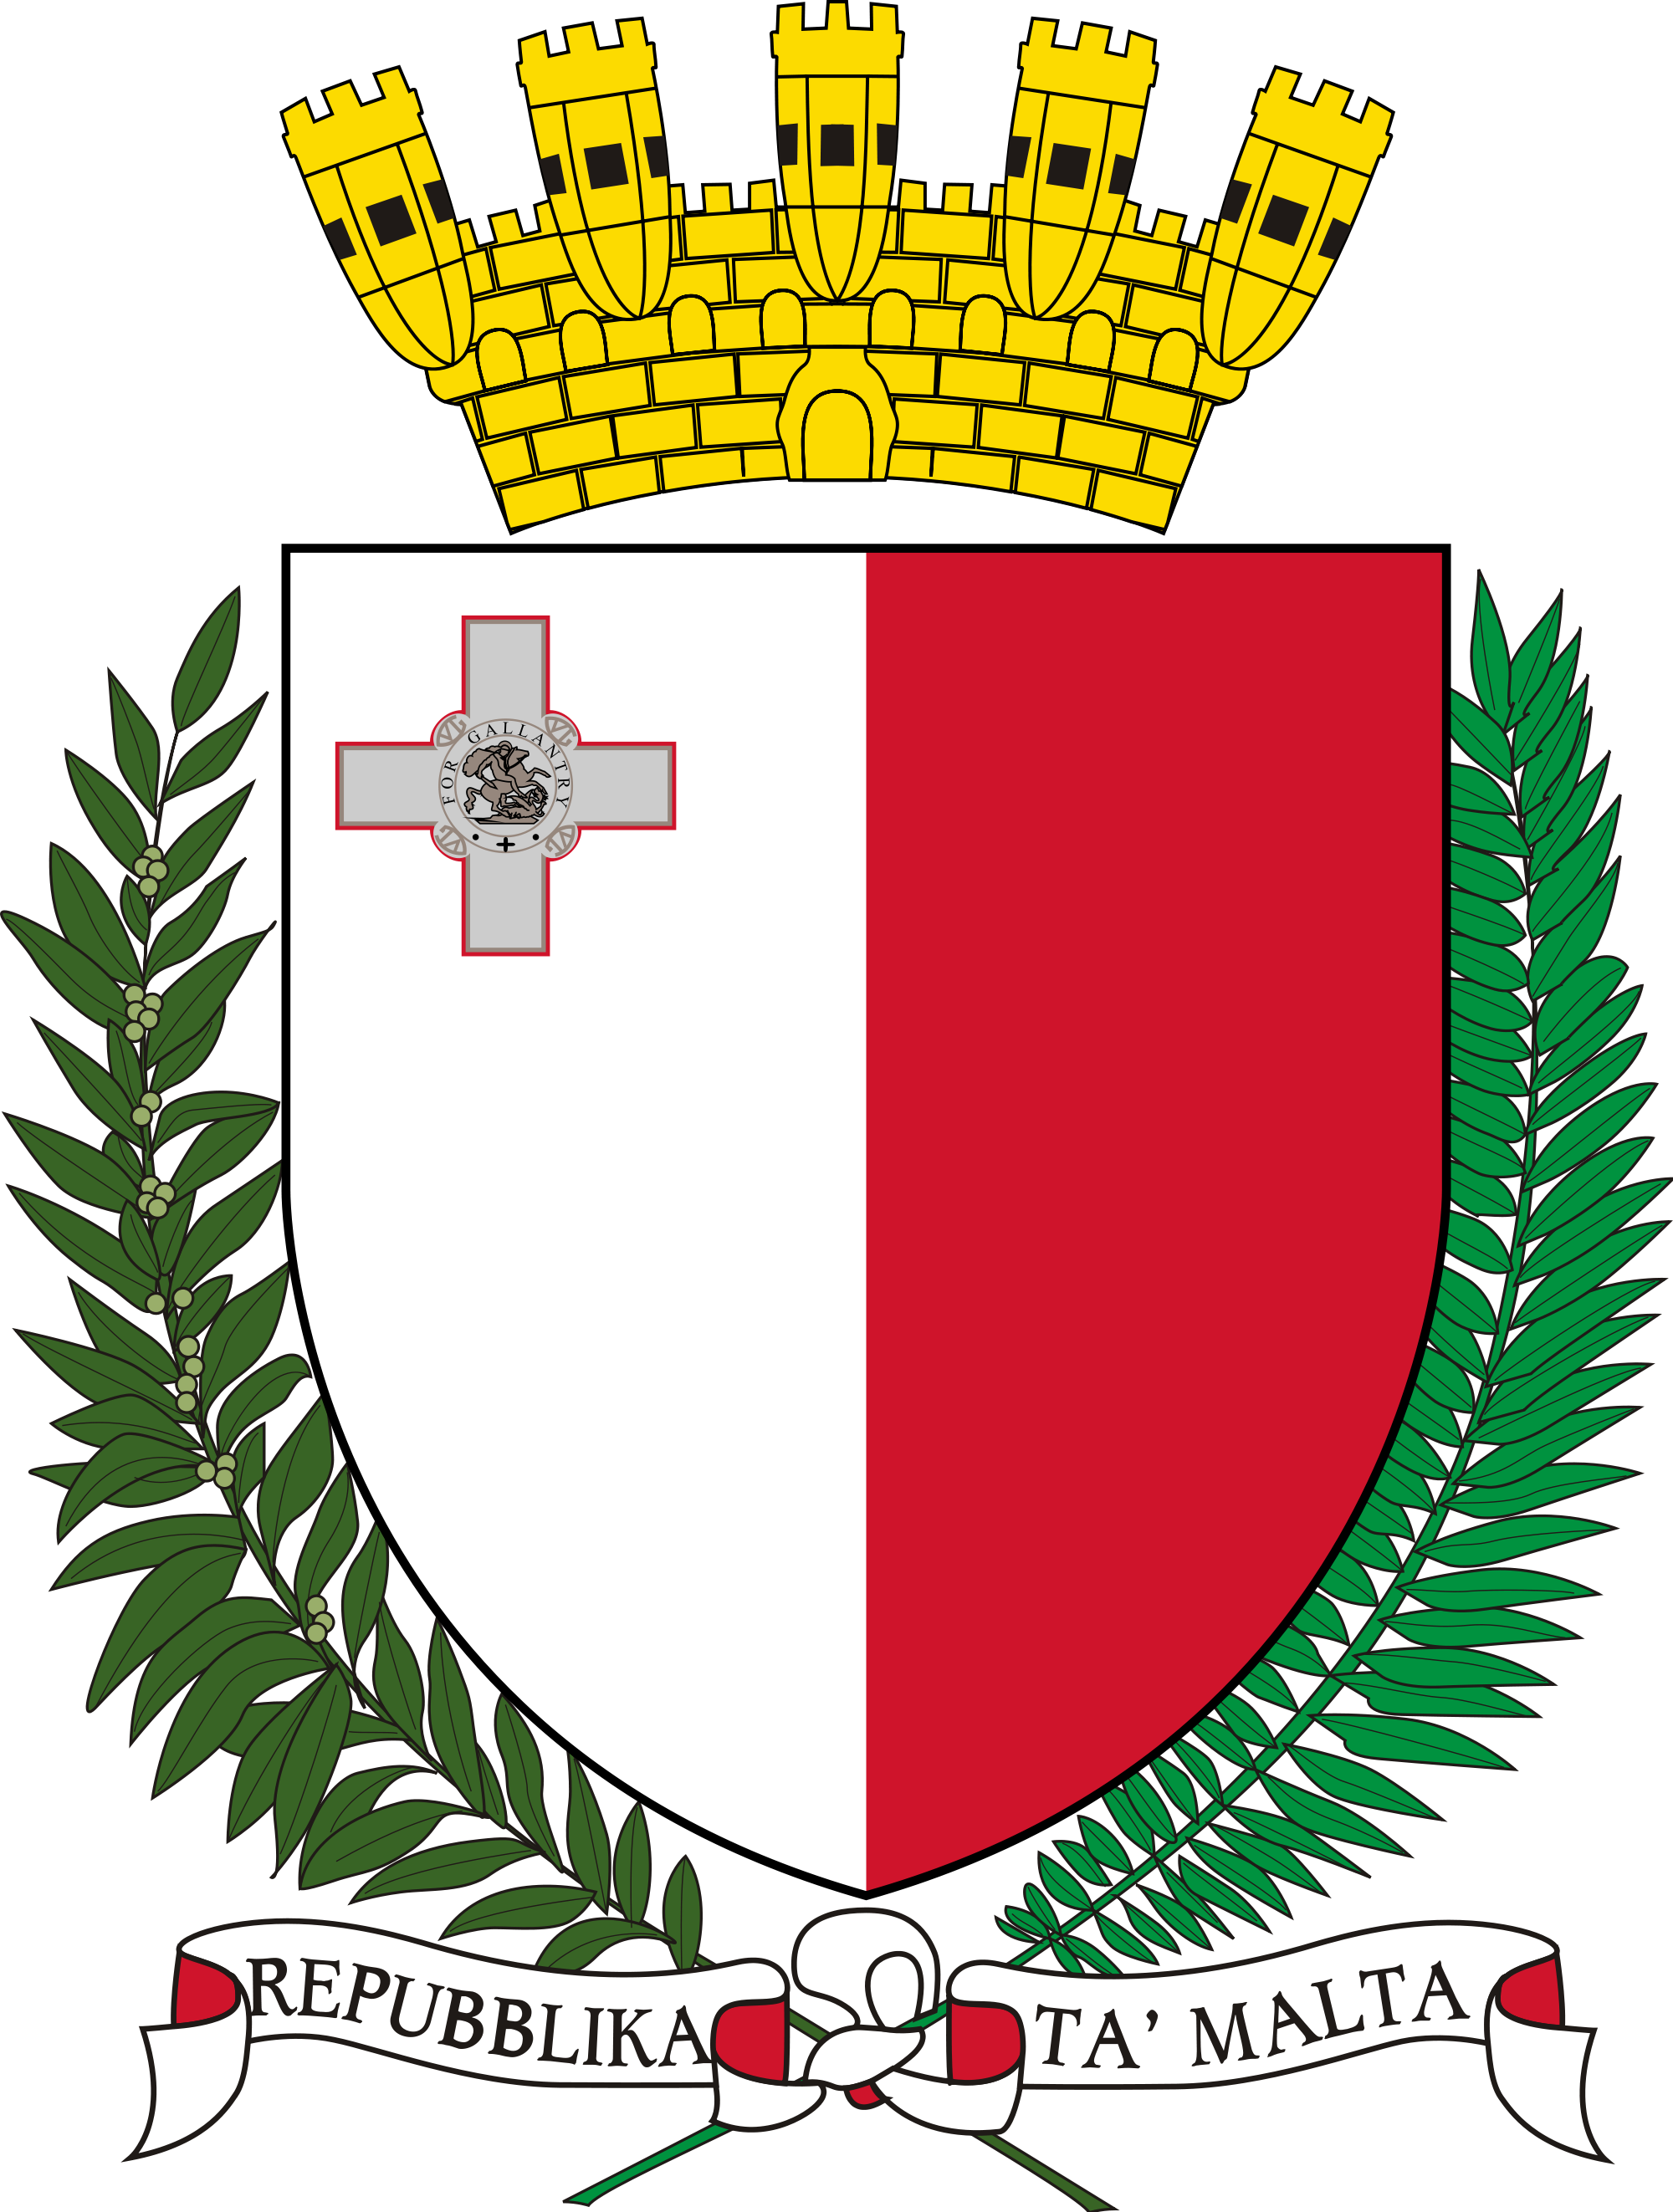 Emblem of Malta